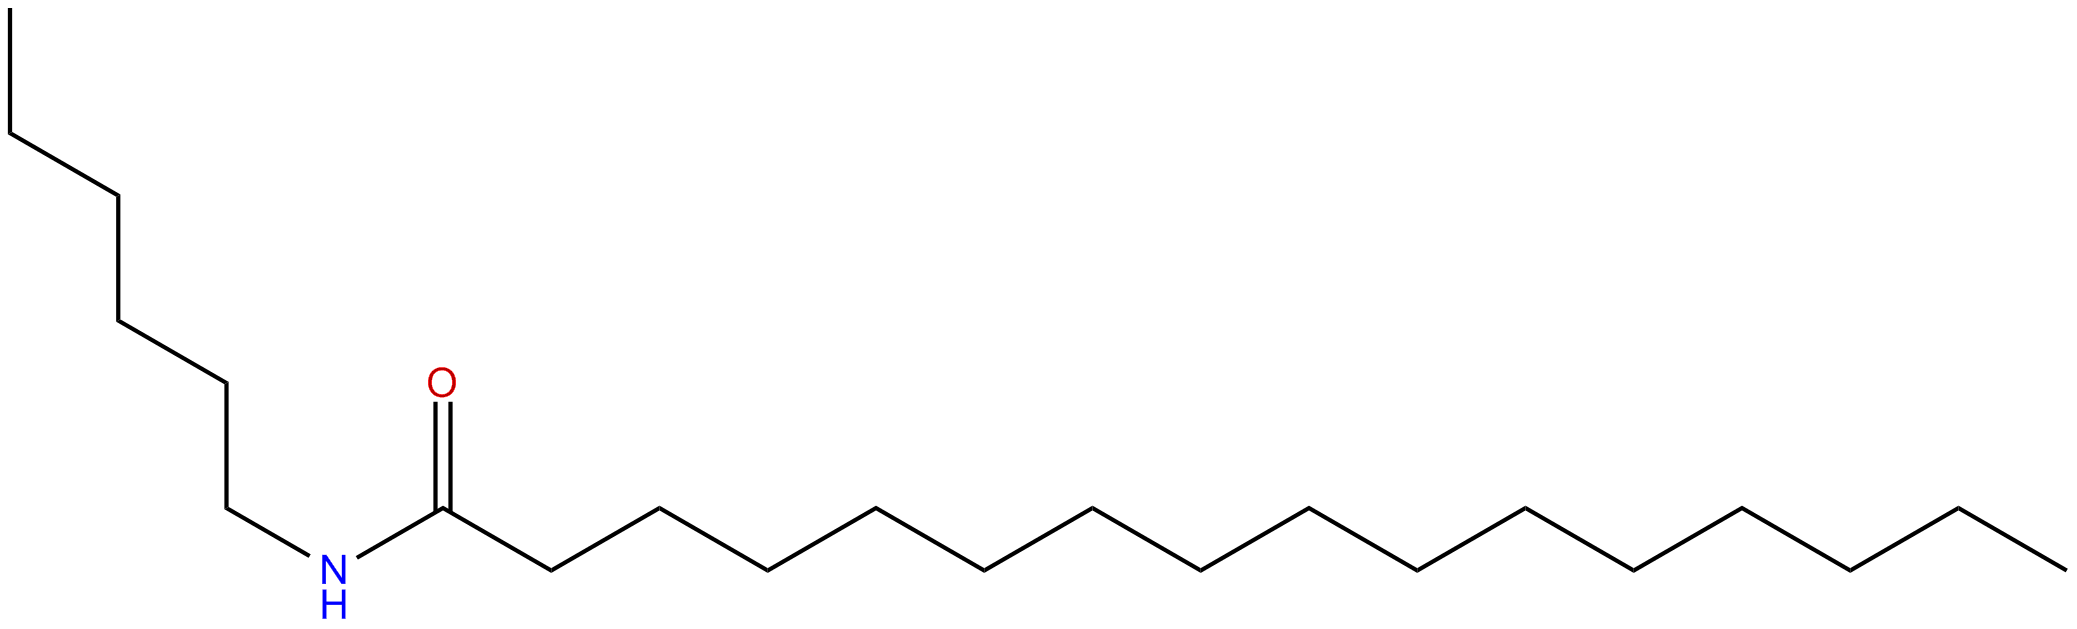 Image of N-hexylhexadecanamide